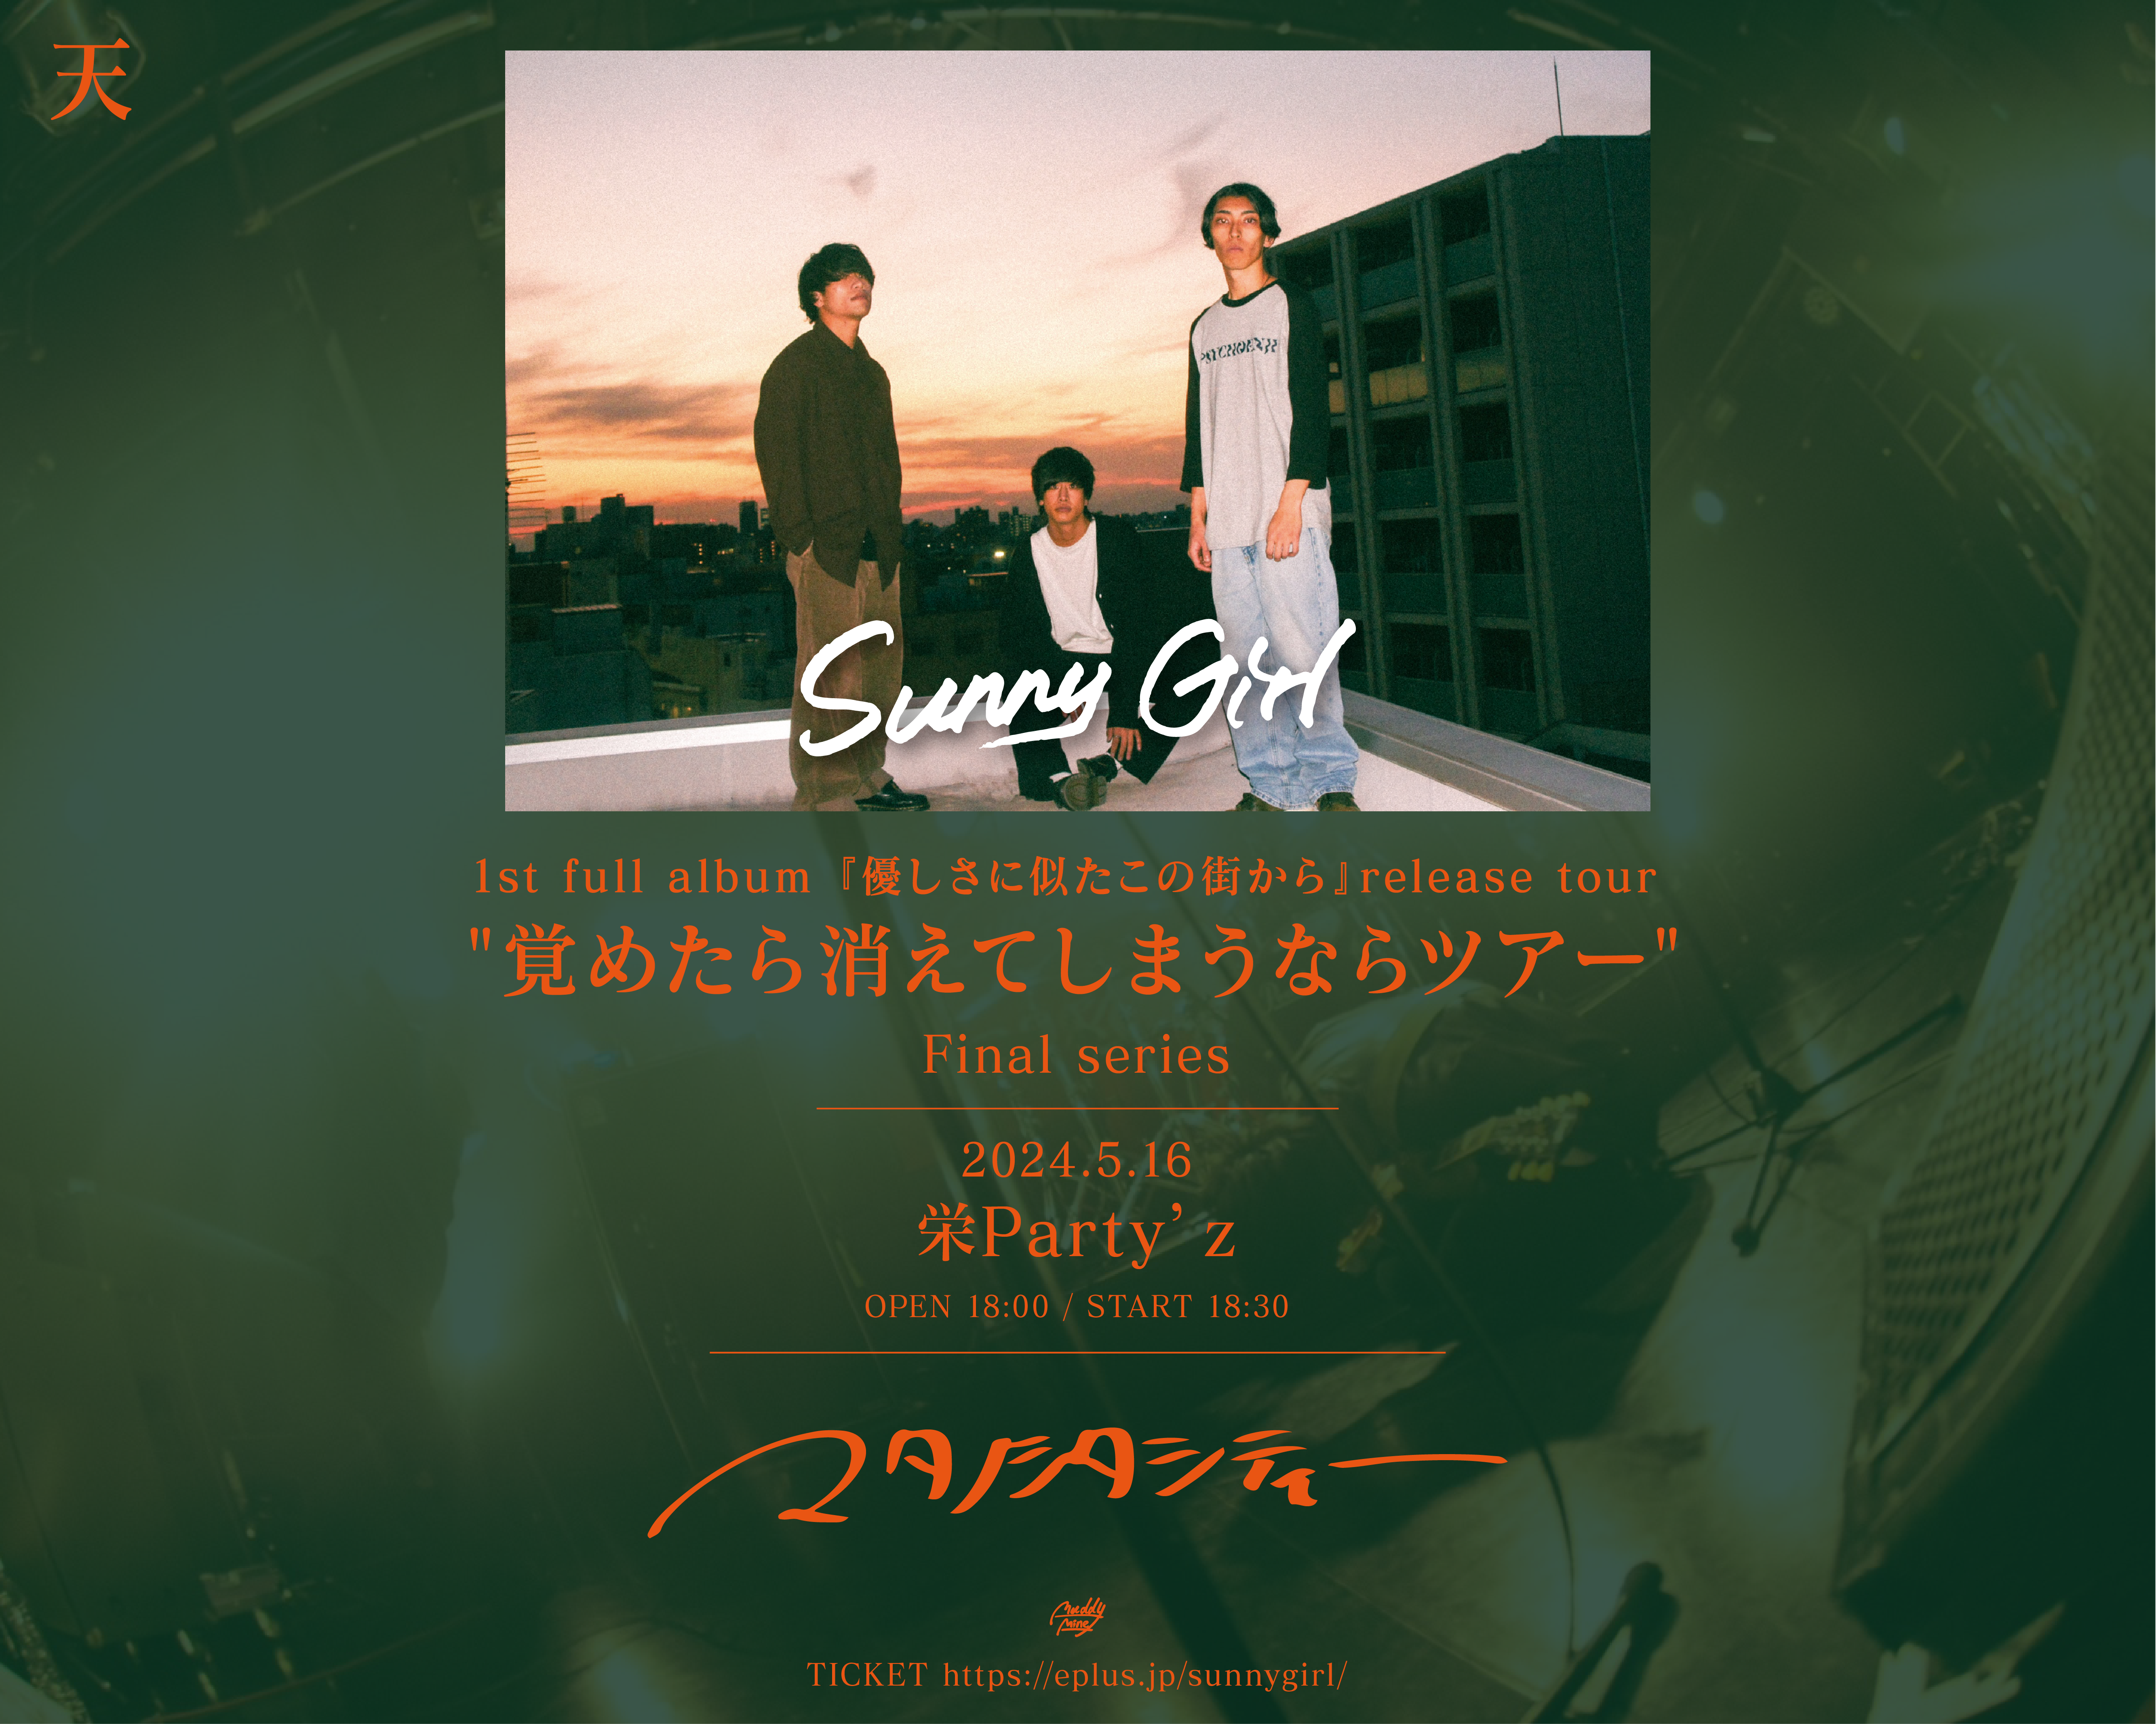 Sunny Girl 1st full album『優しさに似たこの街から』release tour "覚めたら消えてしまうならツアー"